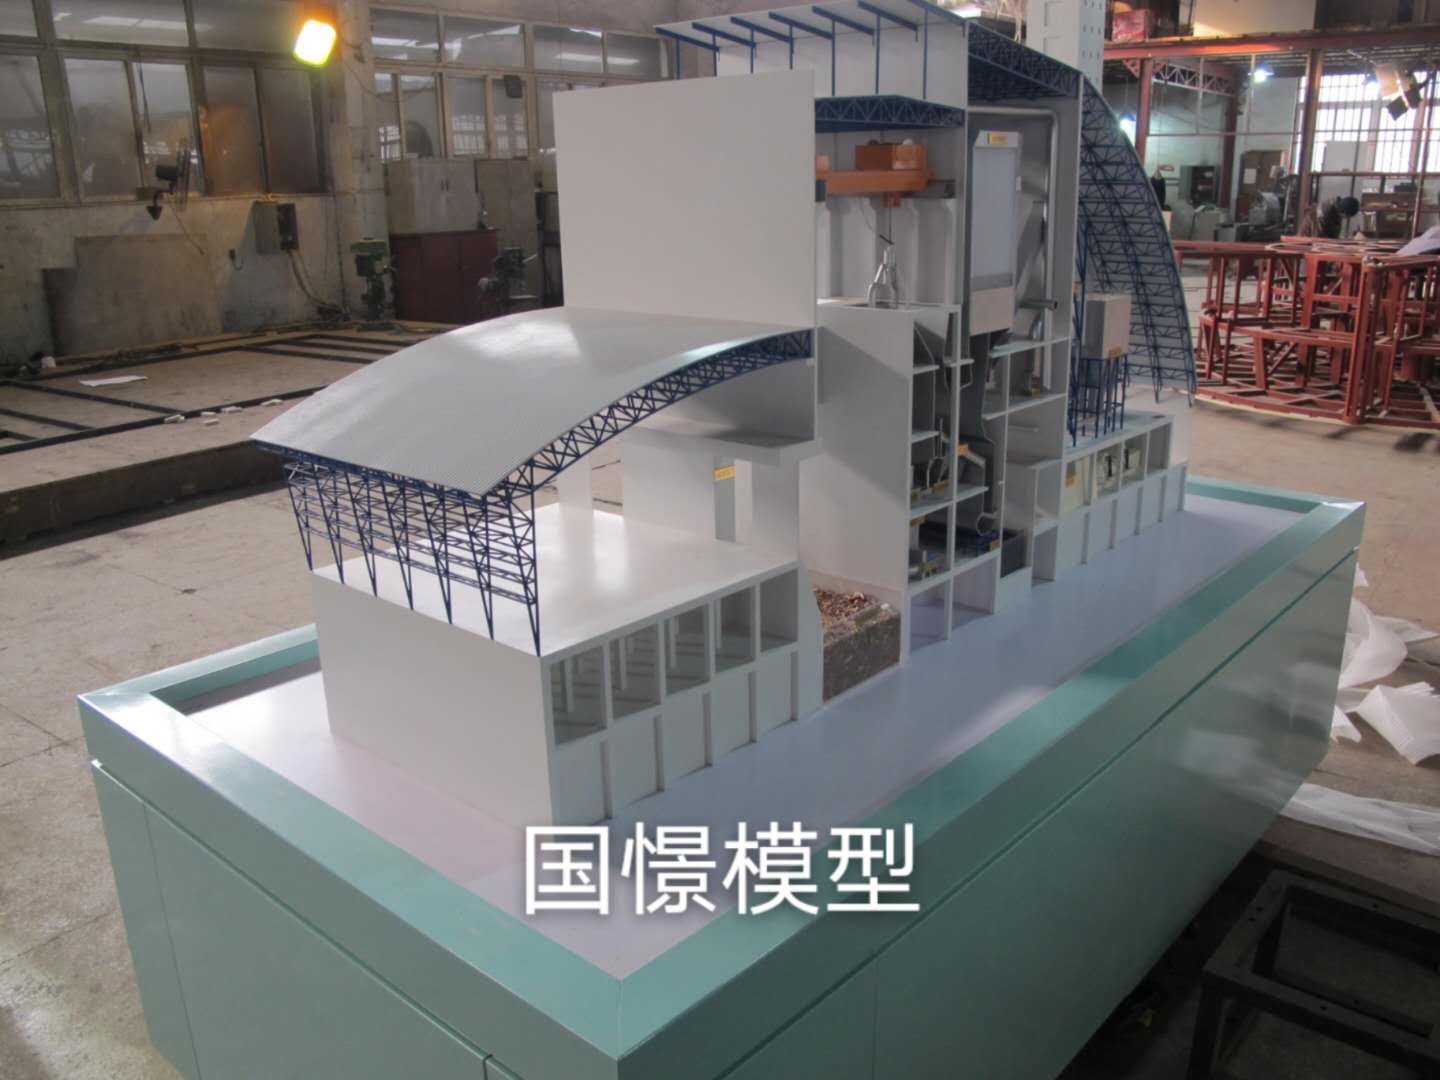 高县工业模型